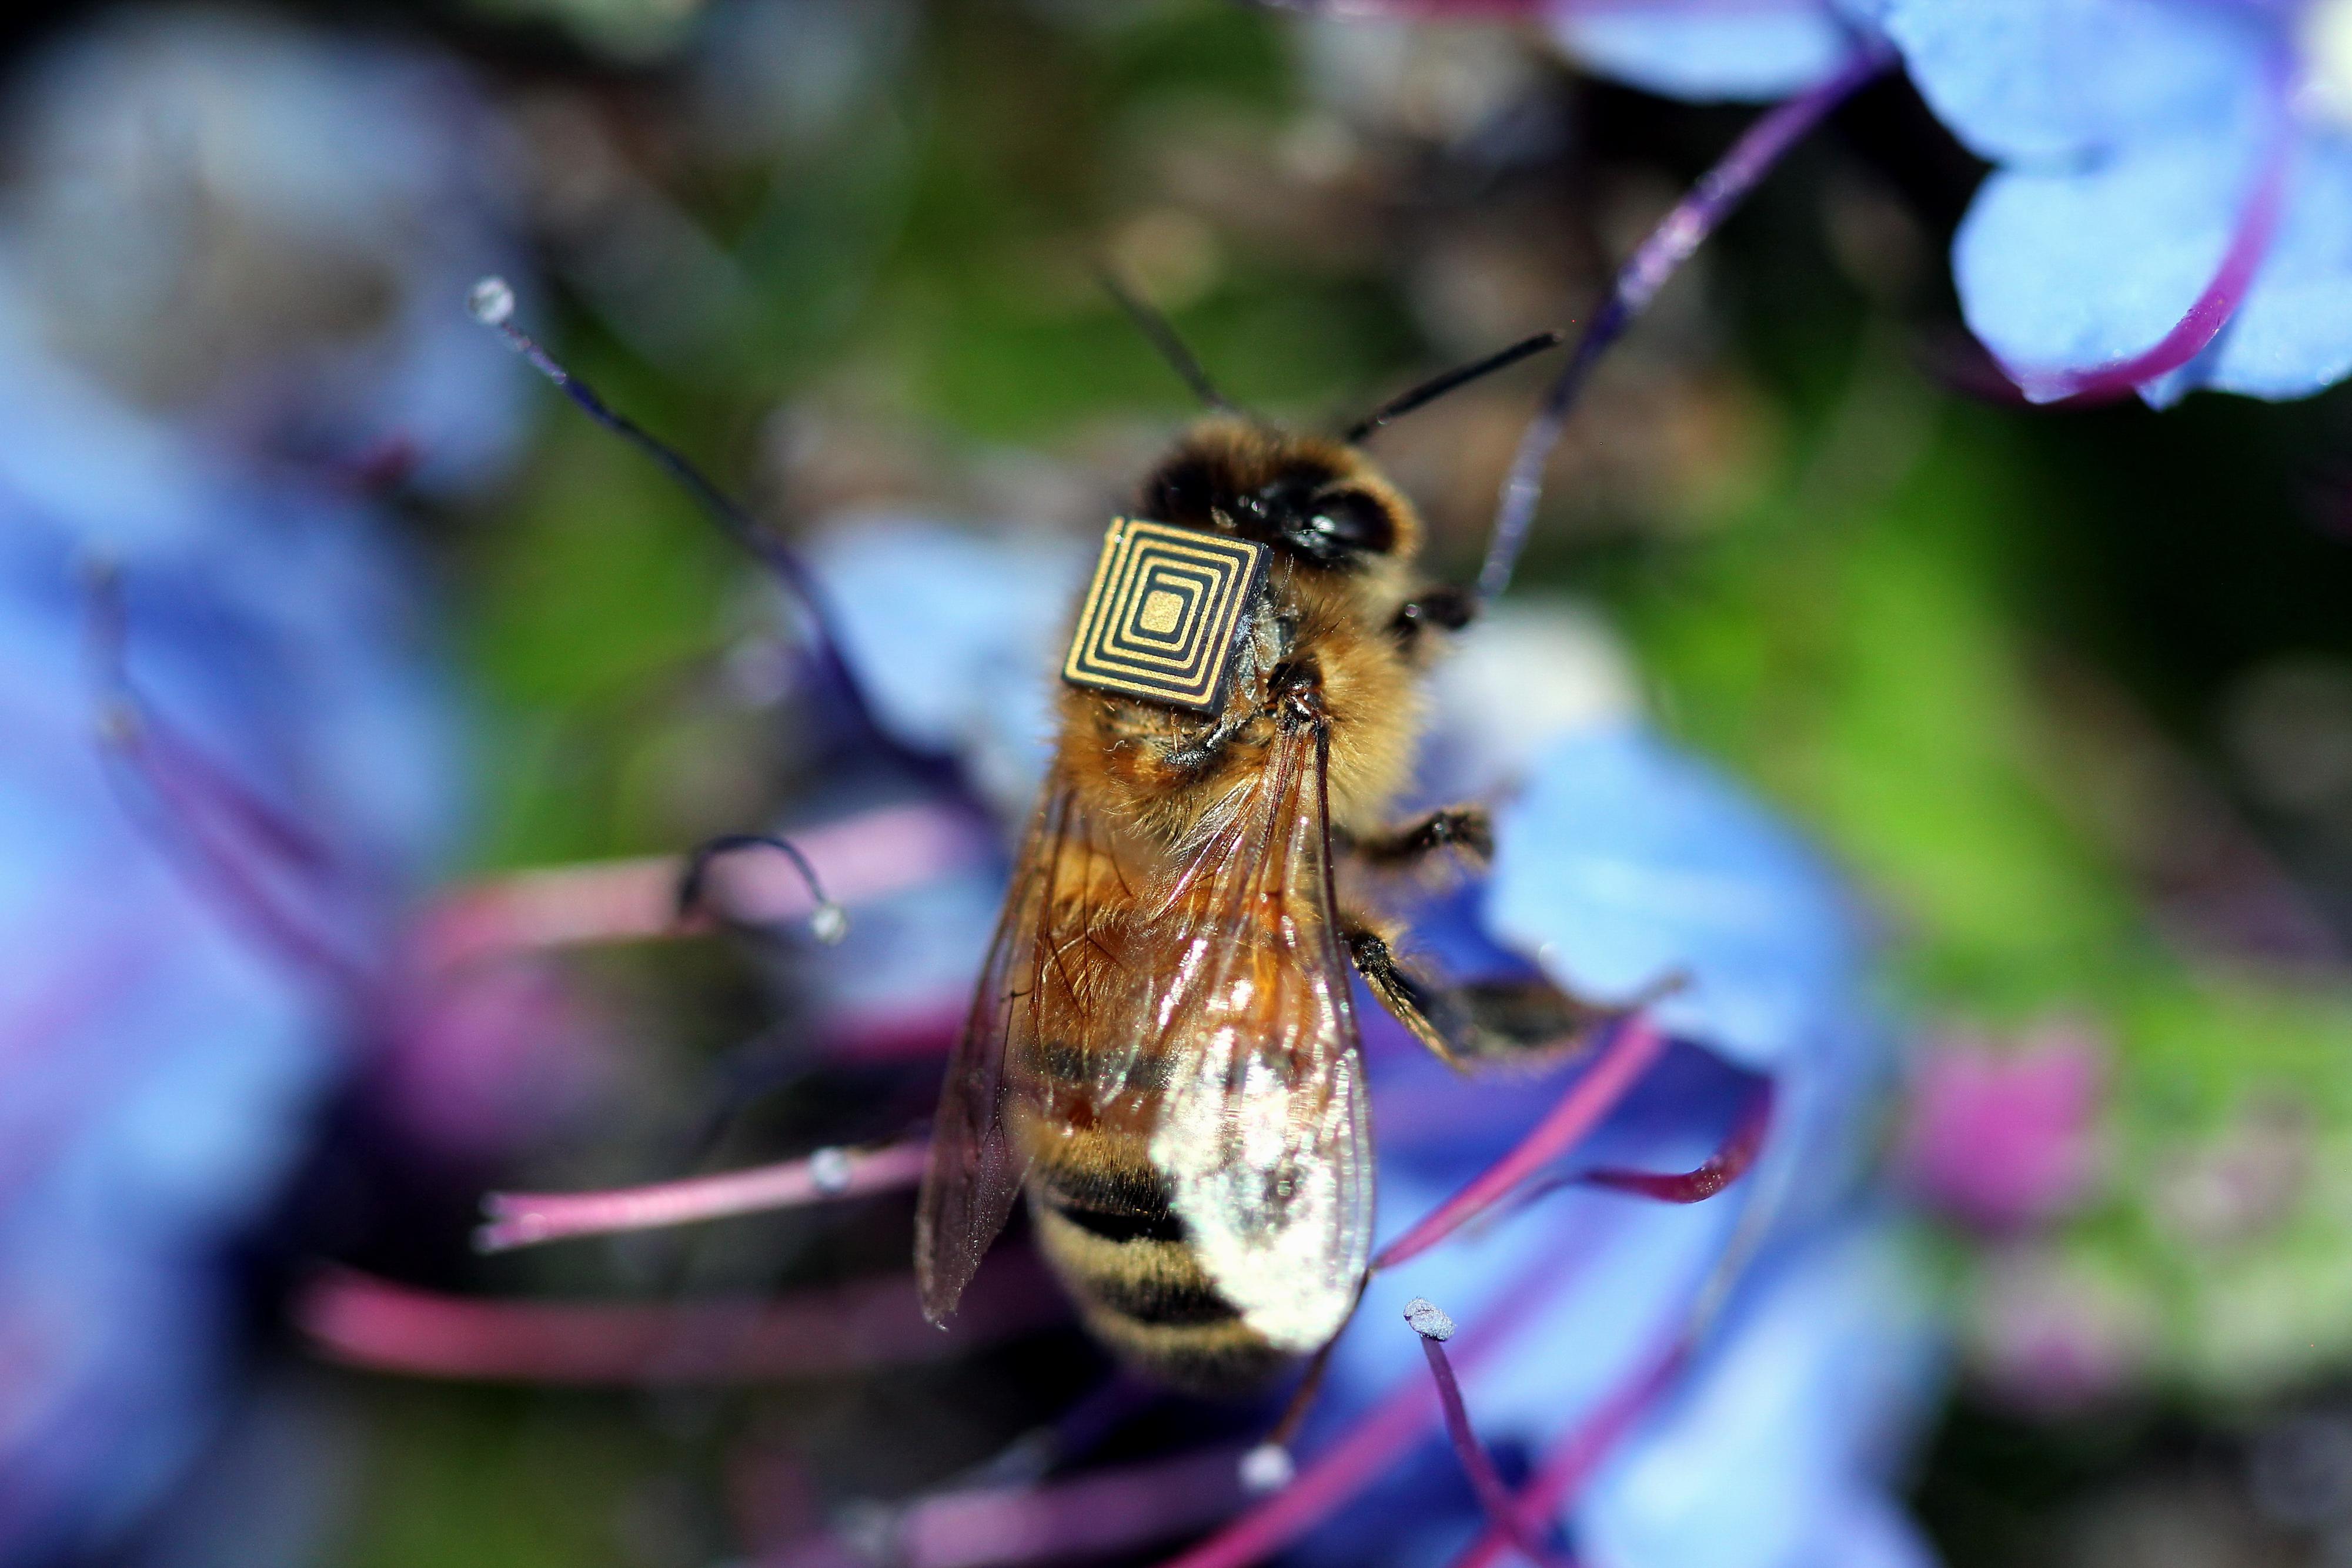 Denne bien overvåkes ved hjelp av en RFID-brikke. Foto: CSIRO, Australias nasjonale forskningsorgan